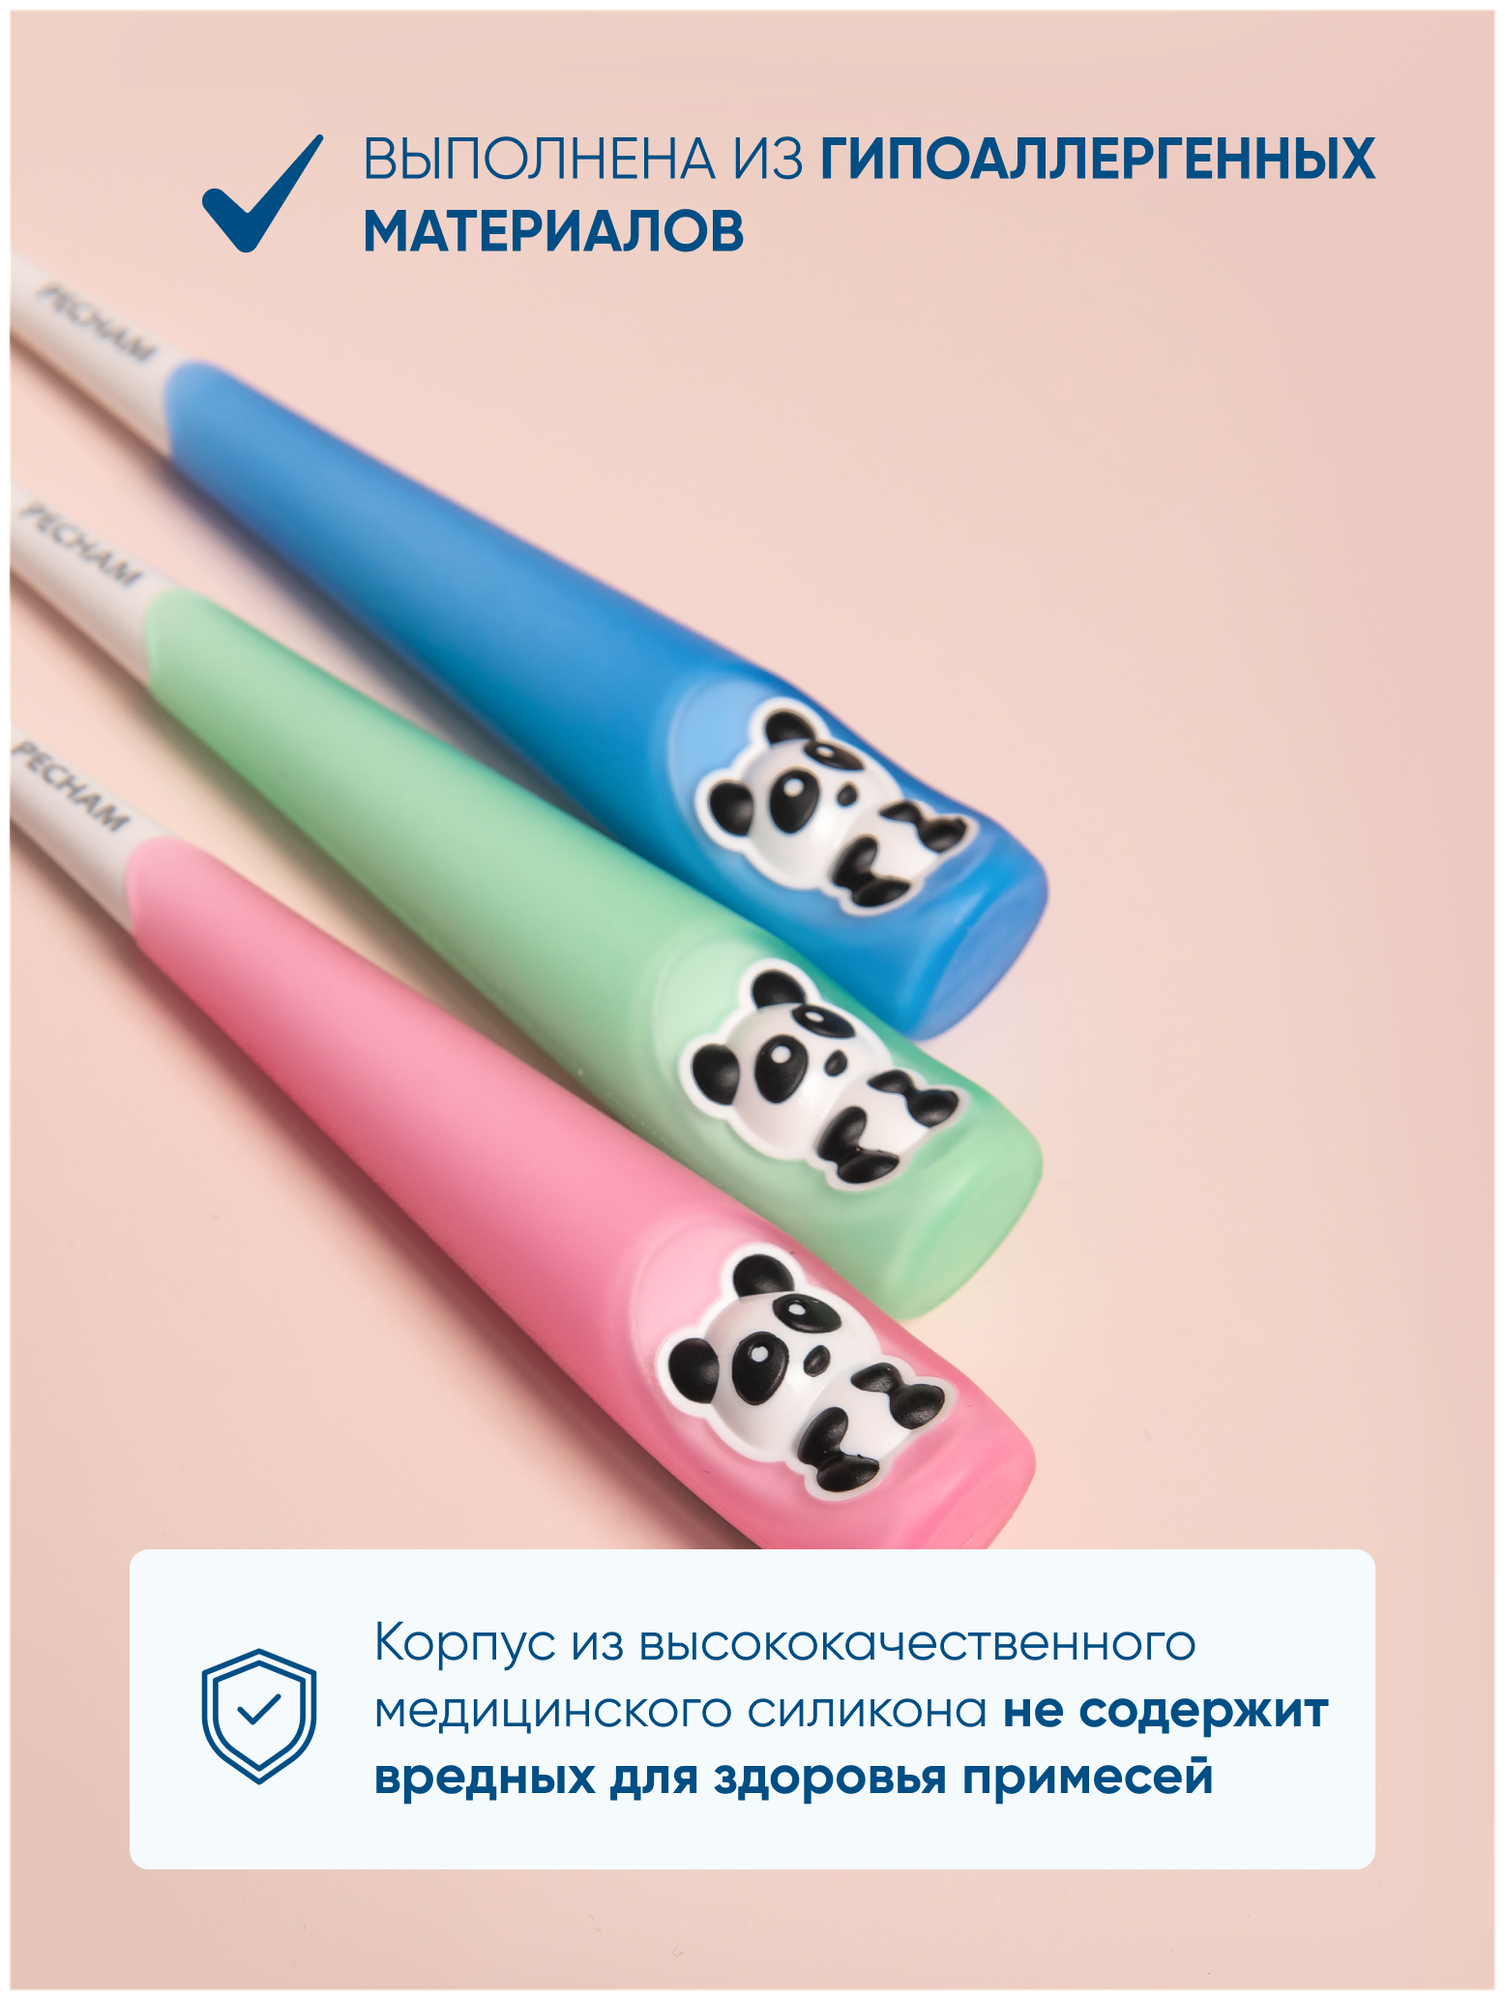 Детская зубная щетка PECHAM Panda Kids PC-400, голубой, для детей 2-6 лет